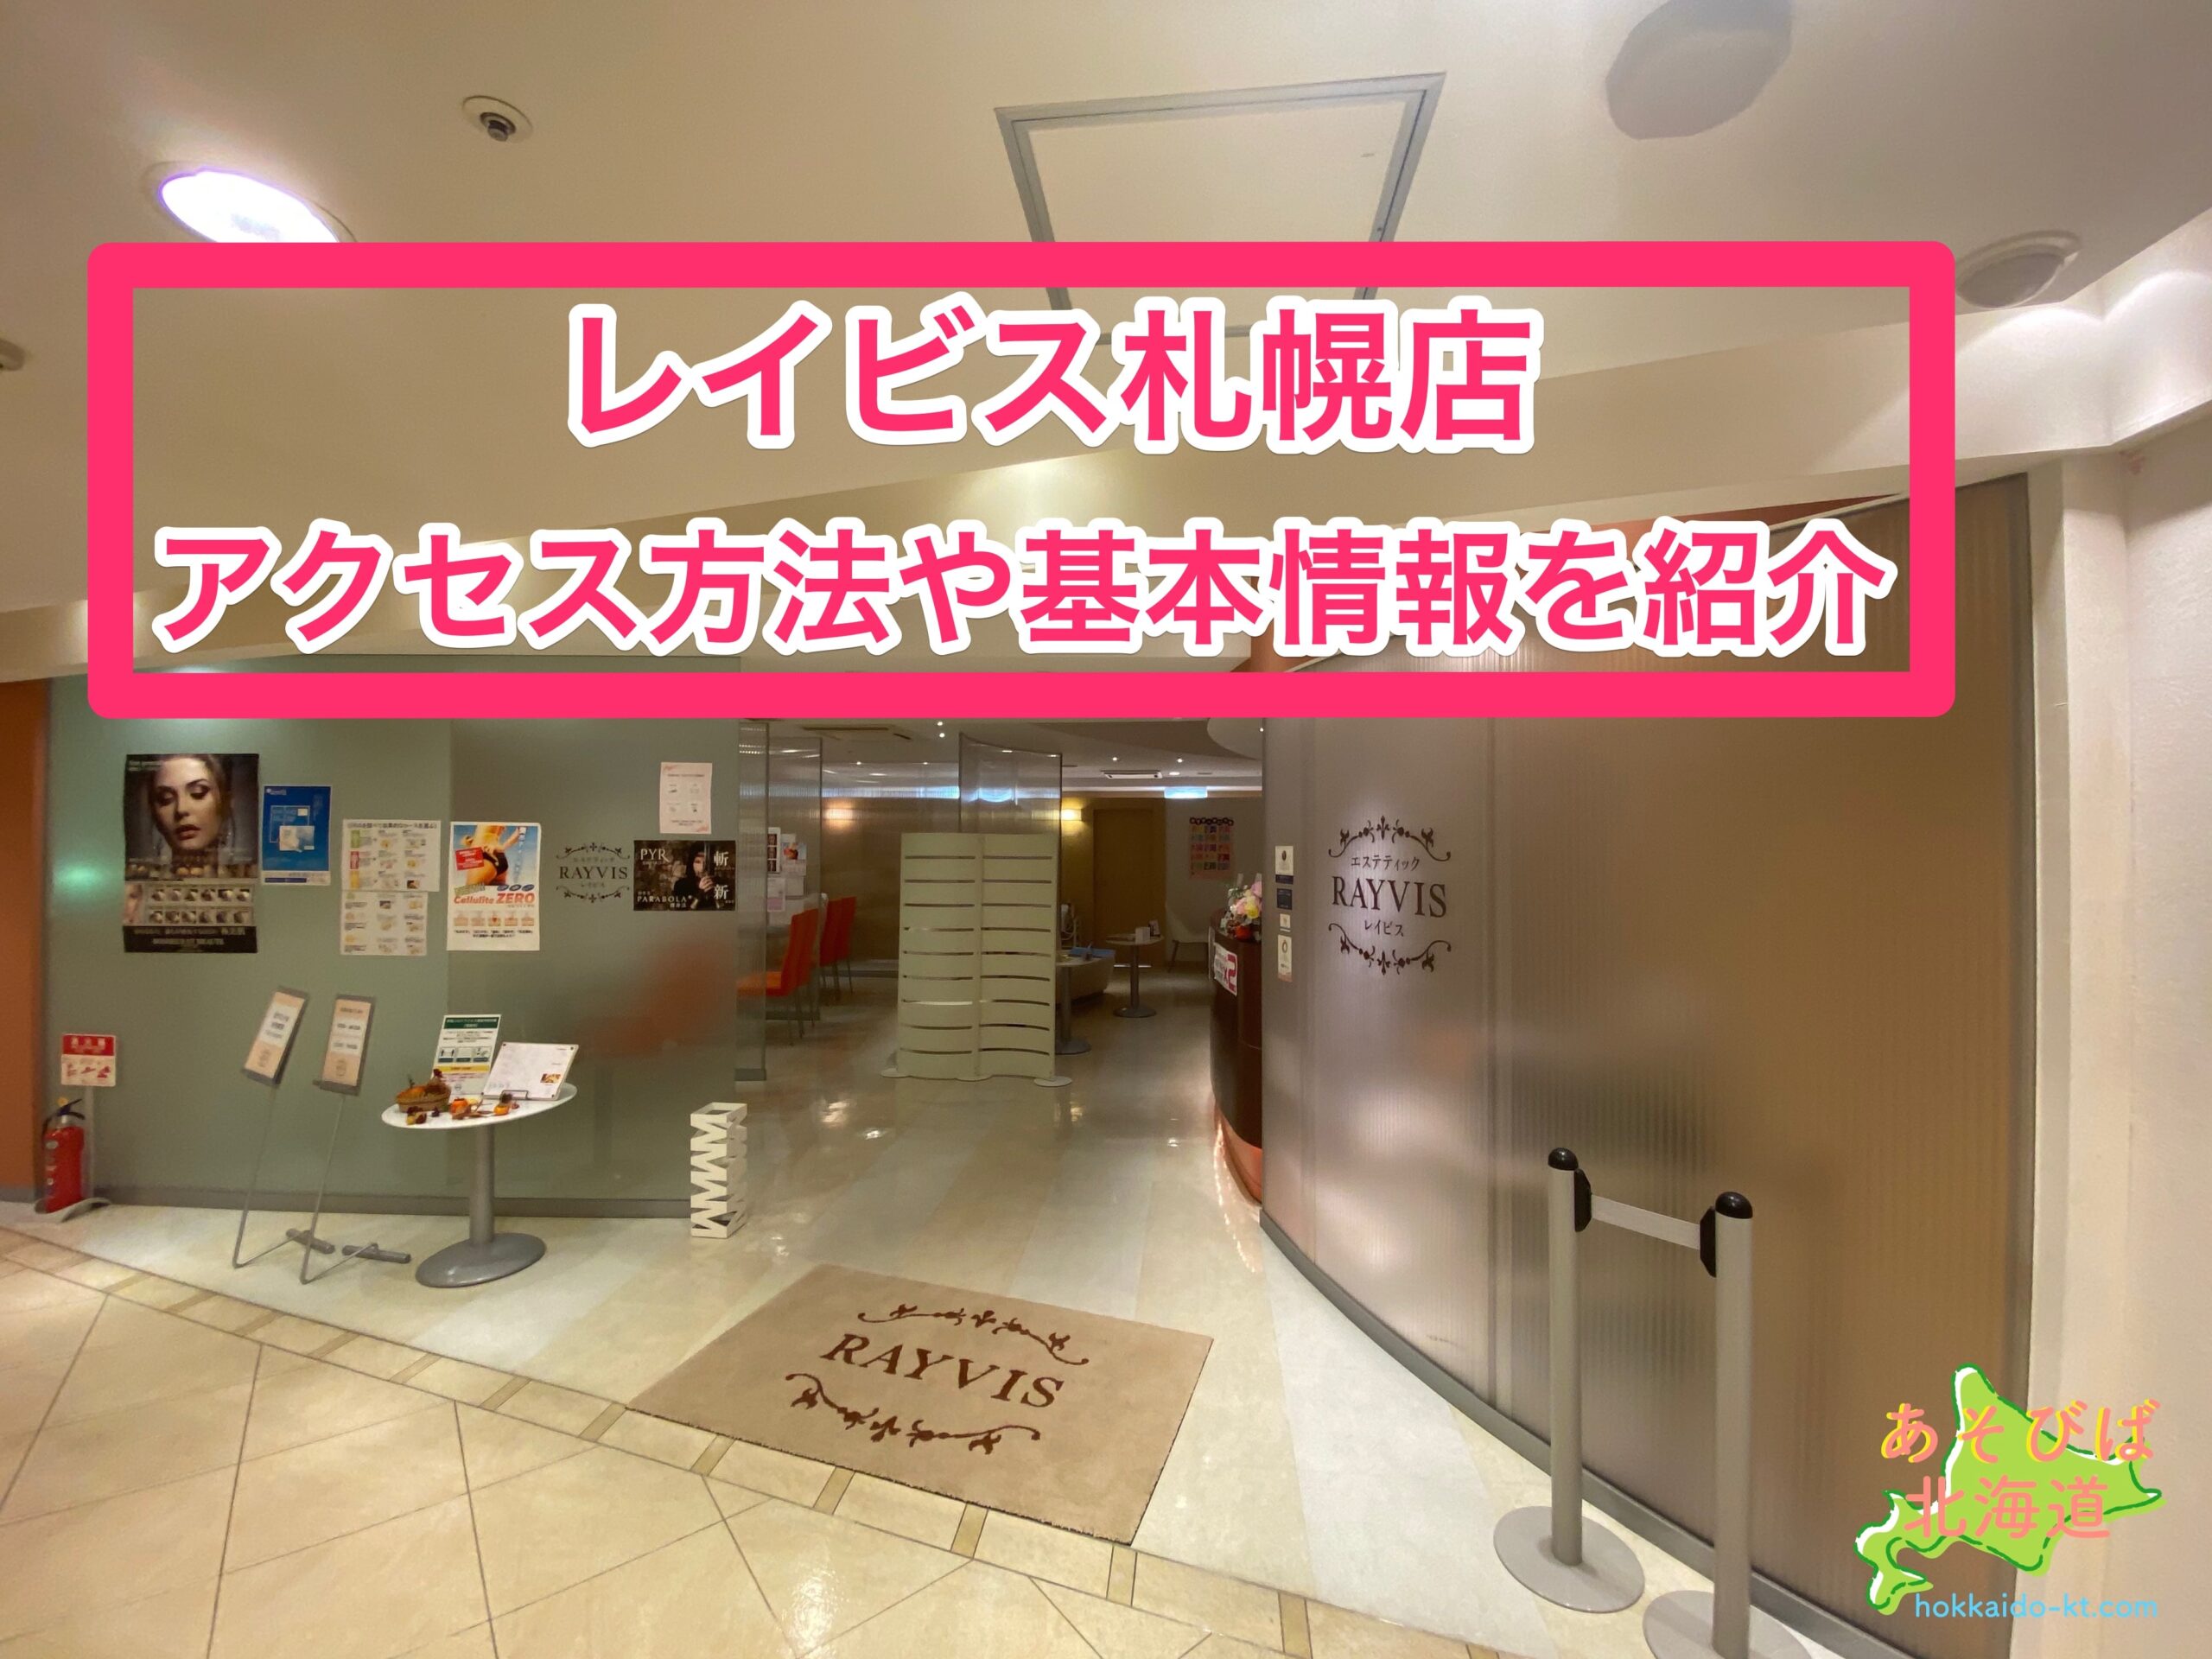 レイビス札幌店の行き方アクセス方法 駐車場は 住所や電話番号などの基本情報も紹介 あそびば北海道